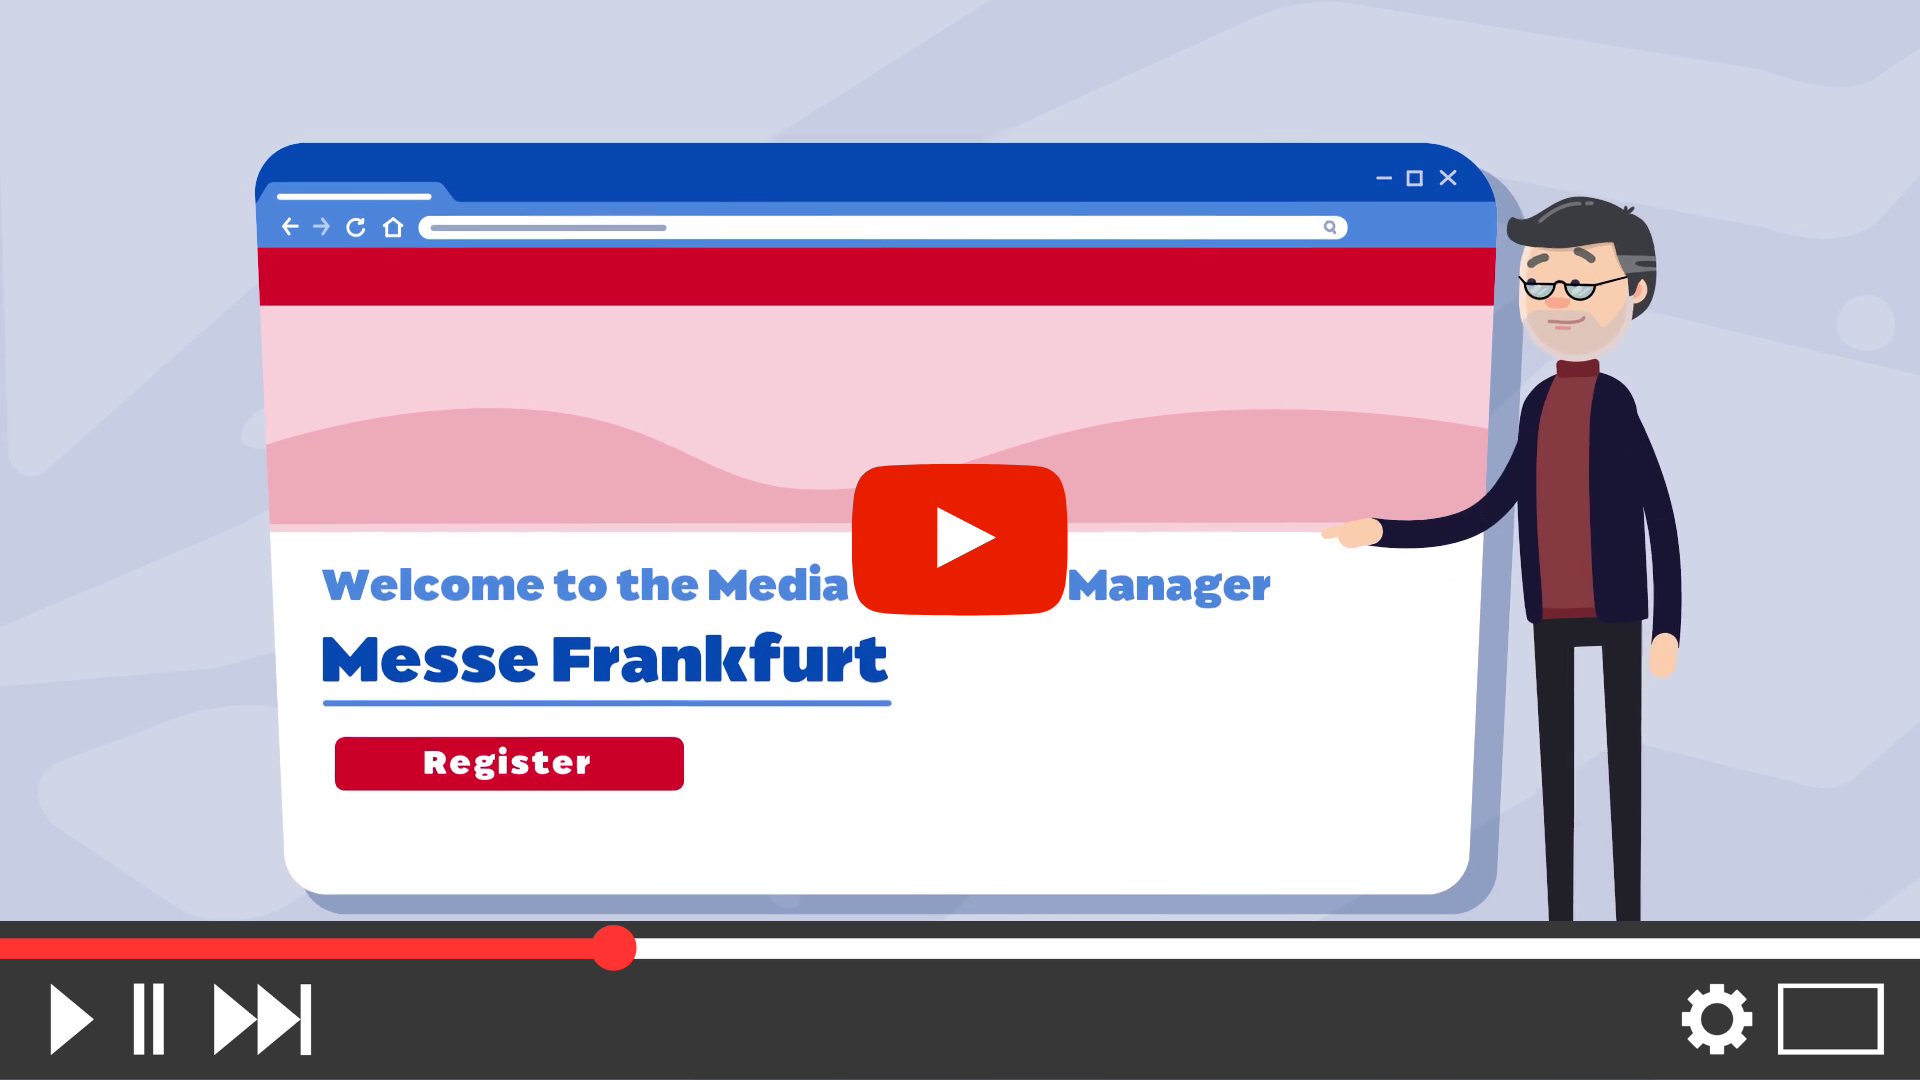 messe-frankfurt-media-package-manager